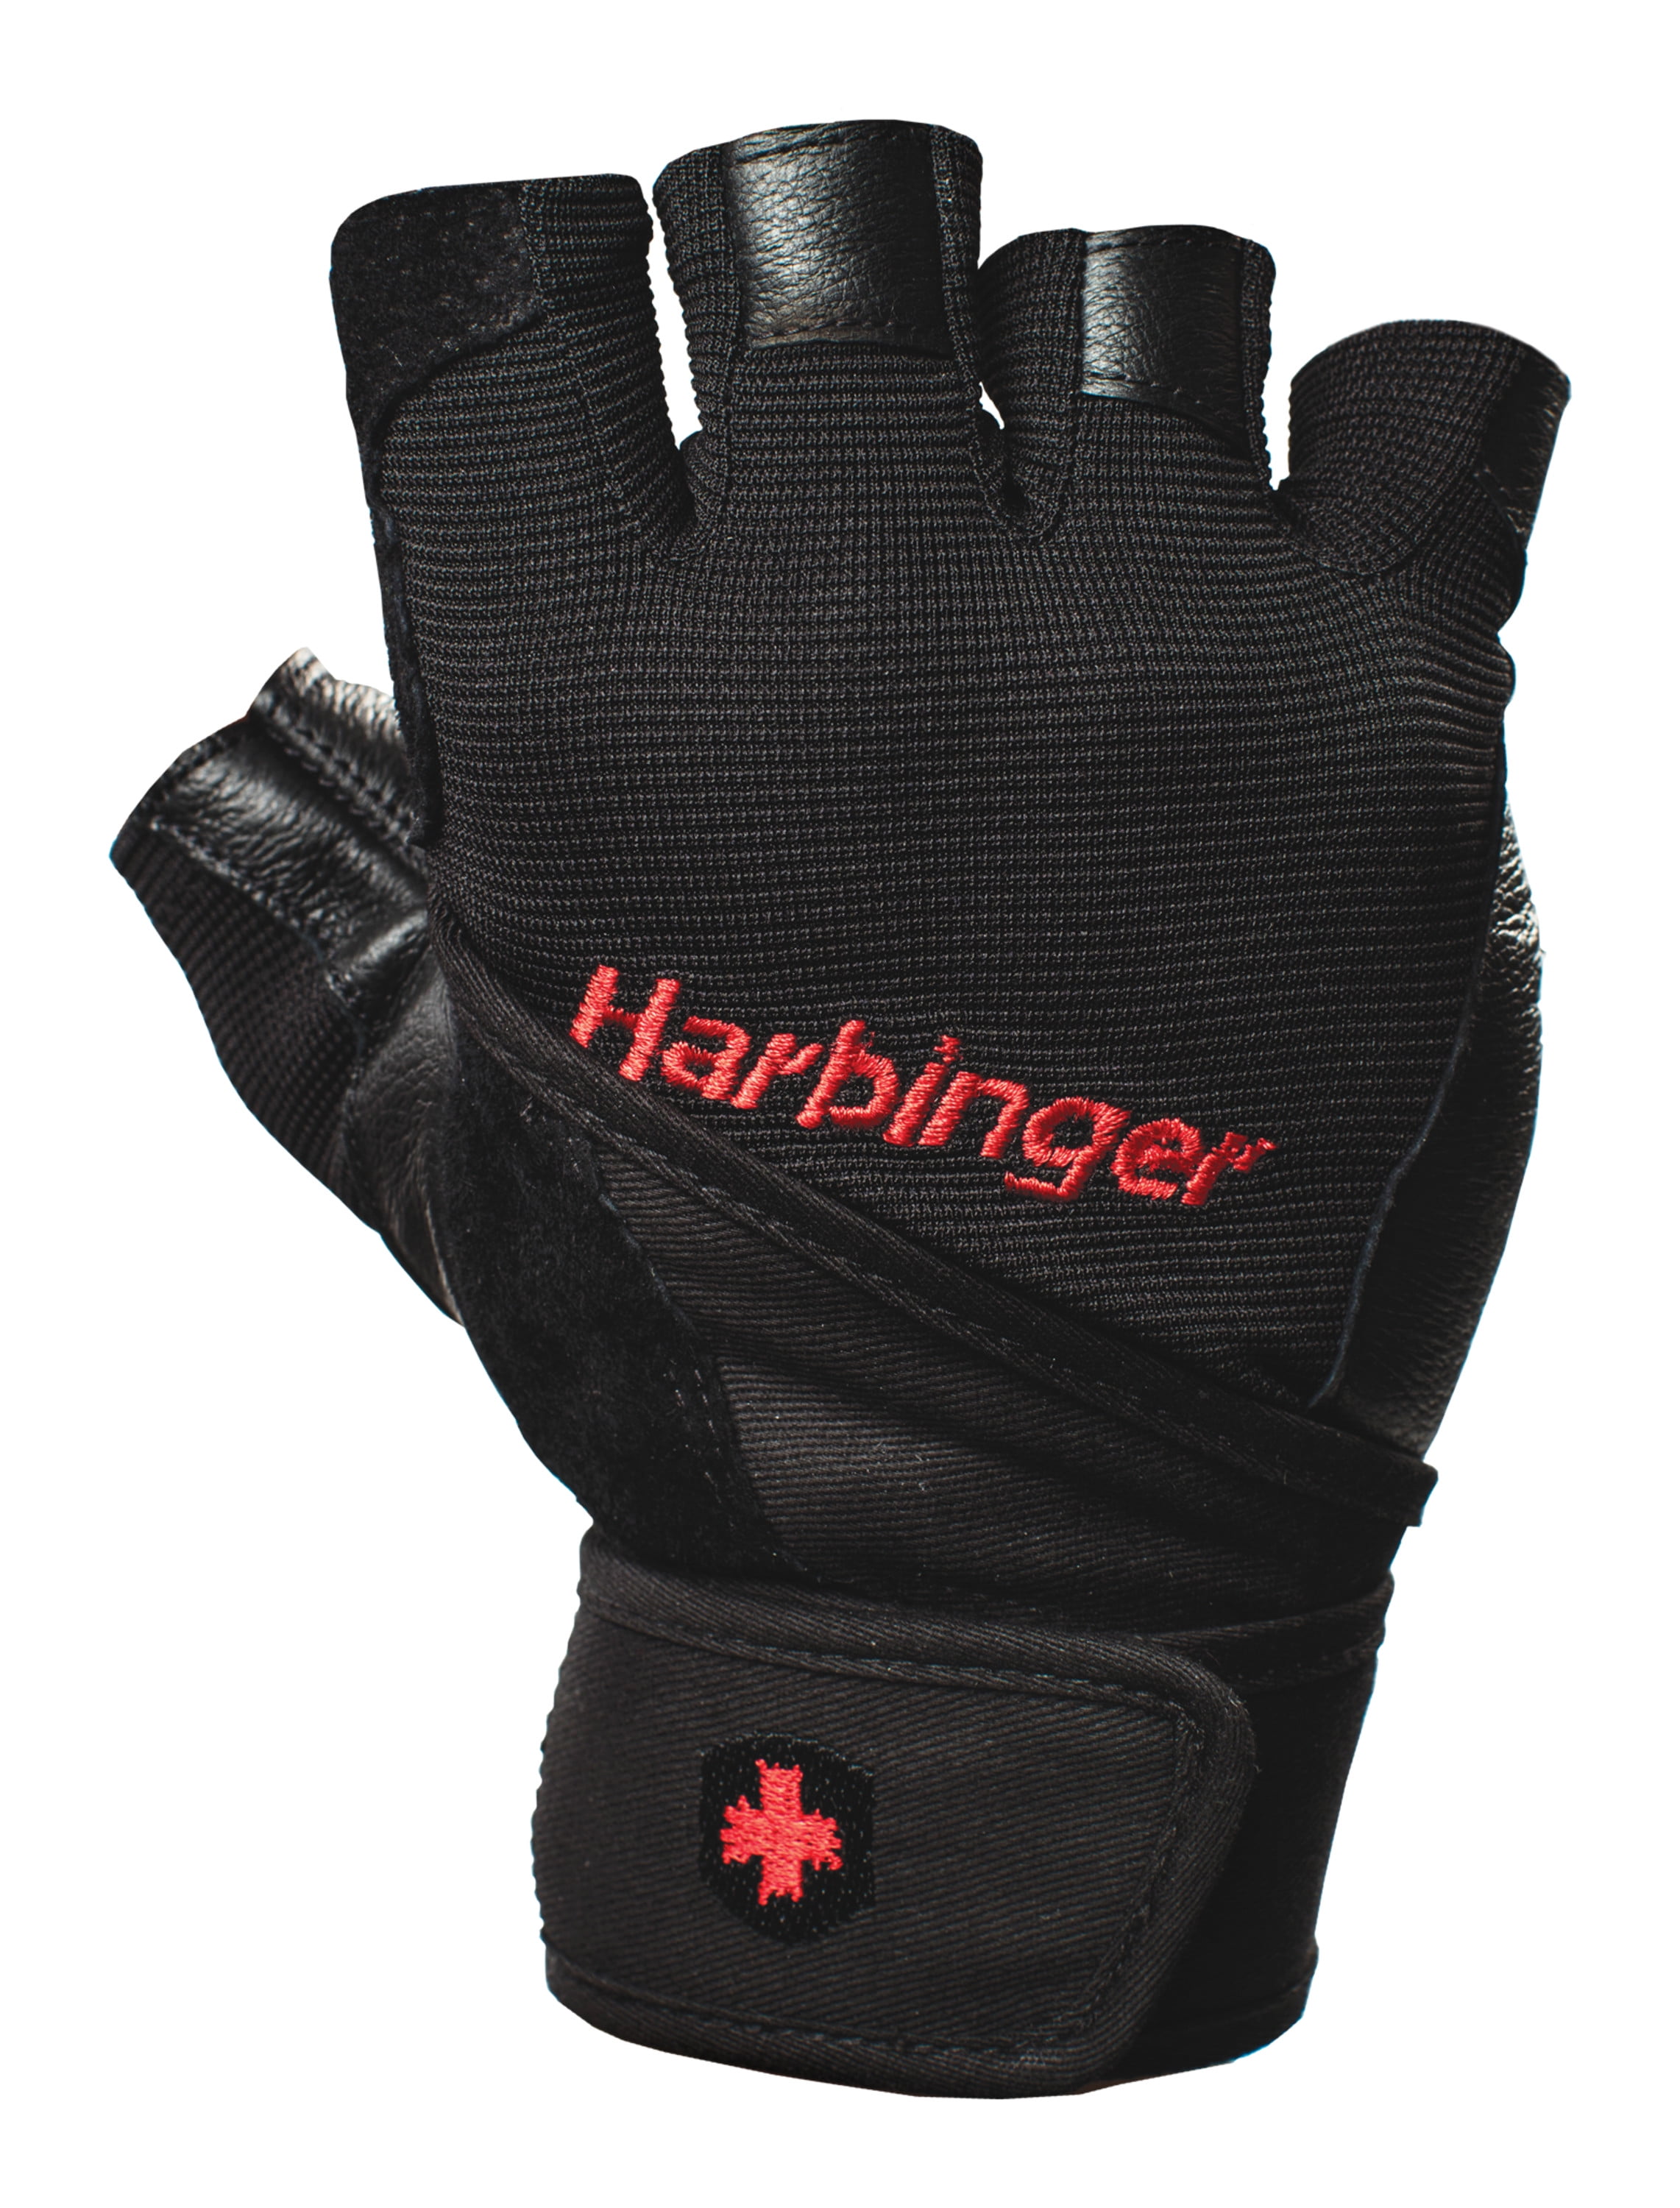 Gants Sport Fitness skate Harbinger  Wrist Wrap training Gloves-Leather-Black 